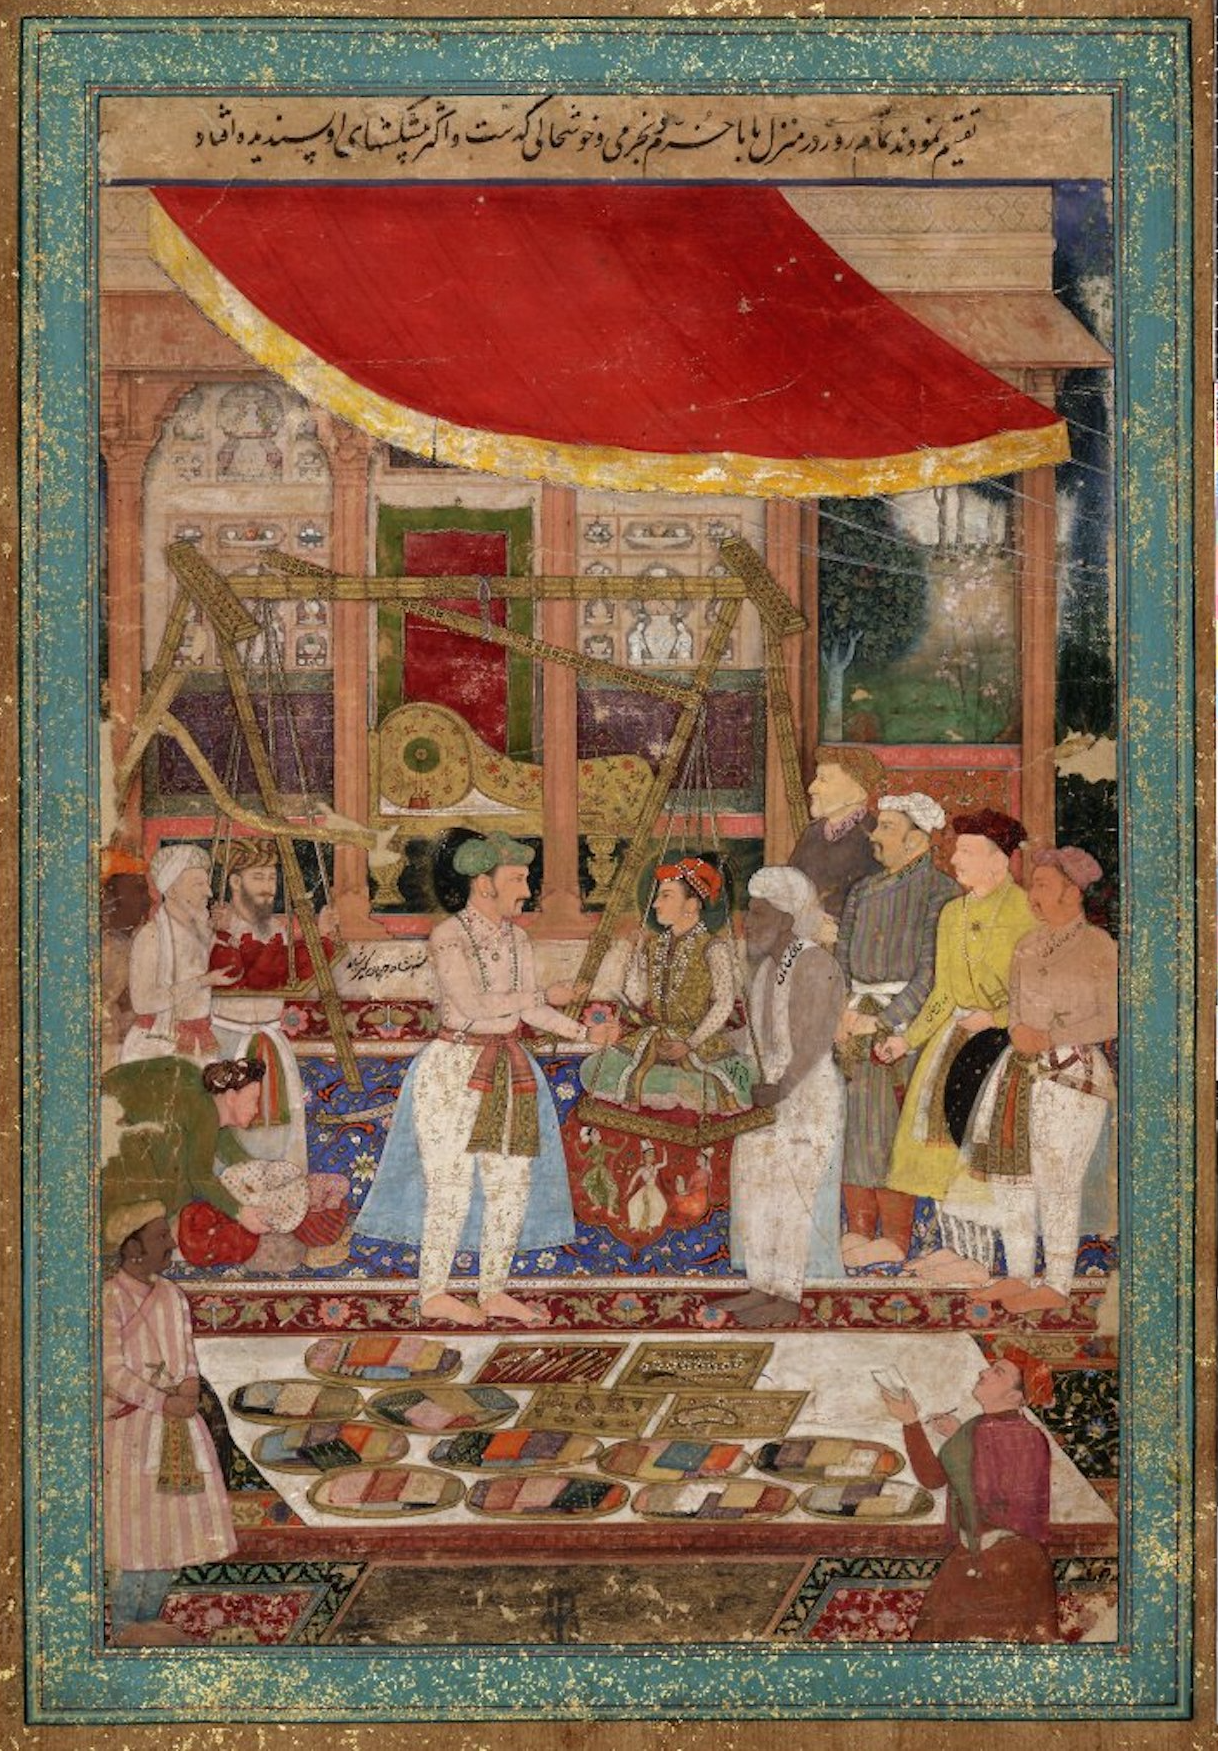 Cérémonie de la pesée du Prince Khurram  by  Manohar - 1610 - 1615 - 29.5 x 44.3 cm British Museum